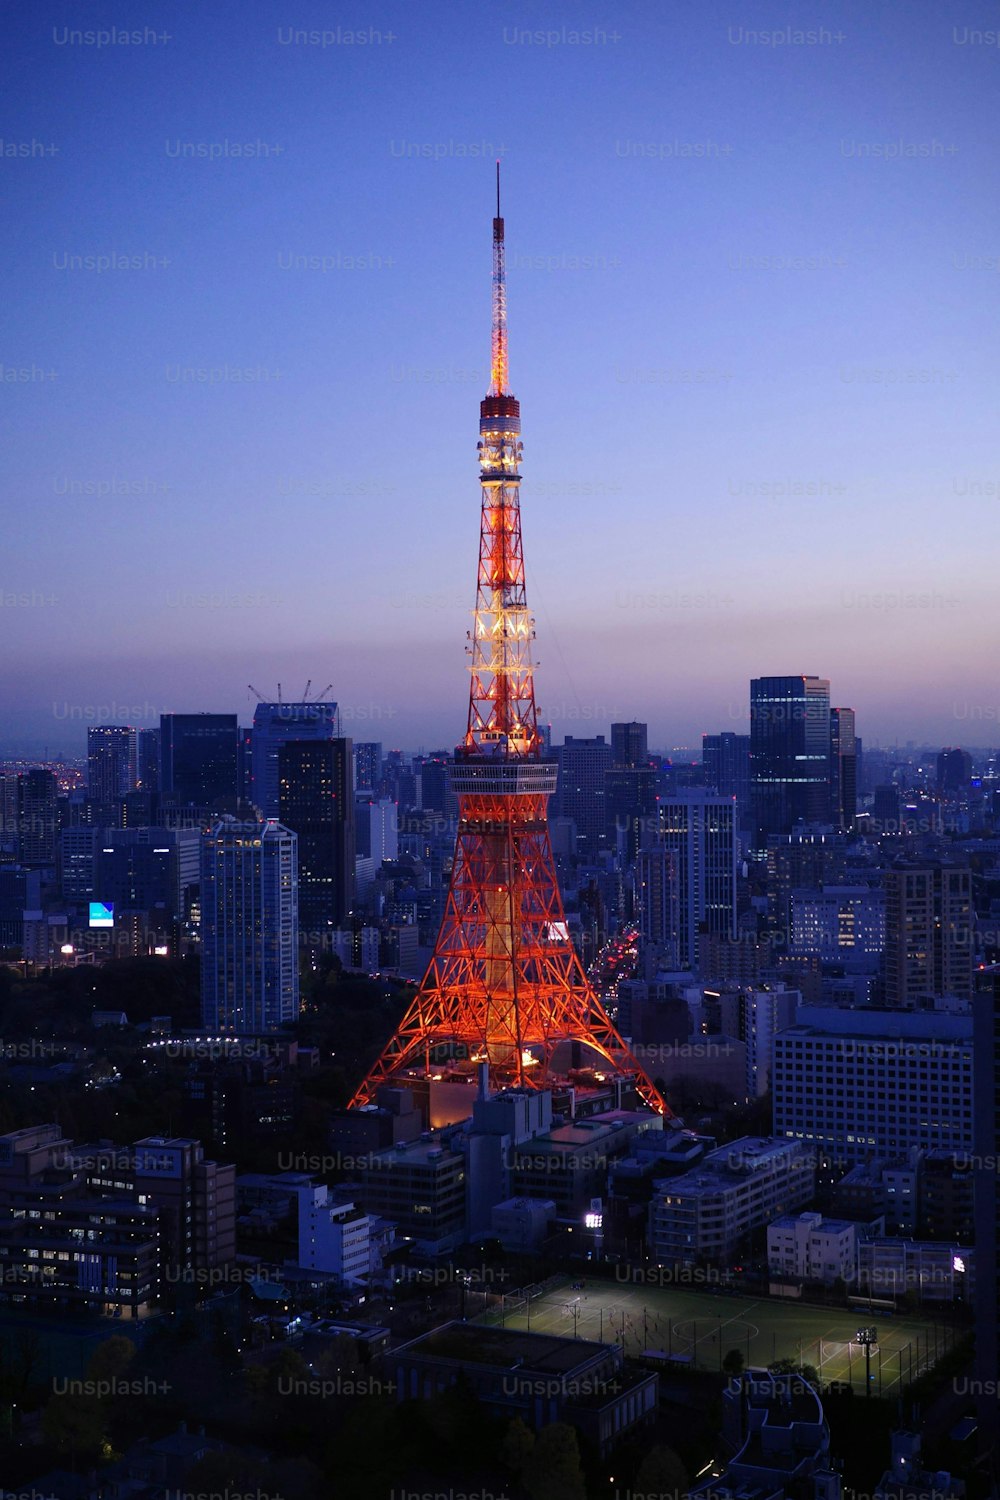 Esta imagem impressionante da icônica Torre vermelha de Tóquio iluminada contra o céu azul é perfeita para o seu próximo projeto fotográfico